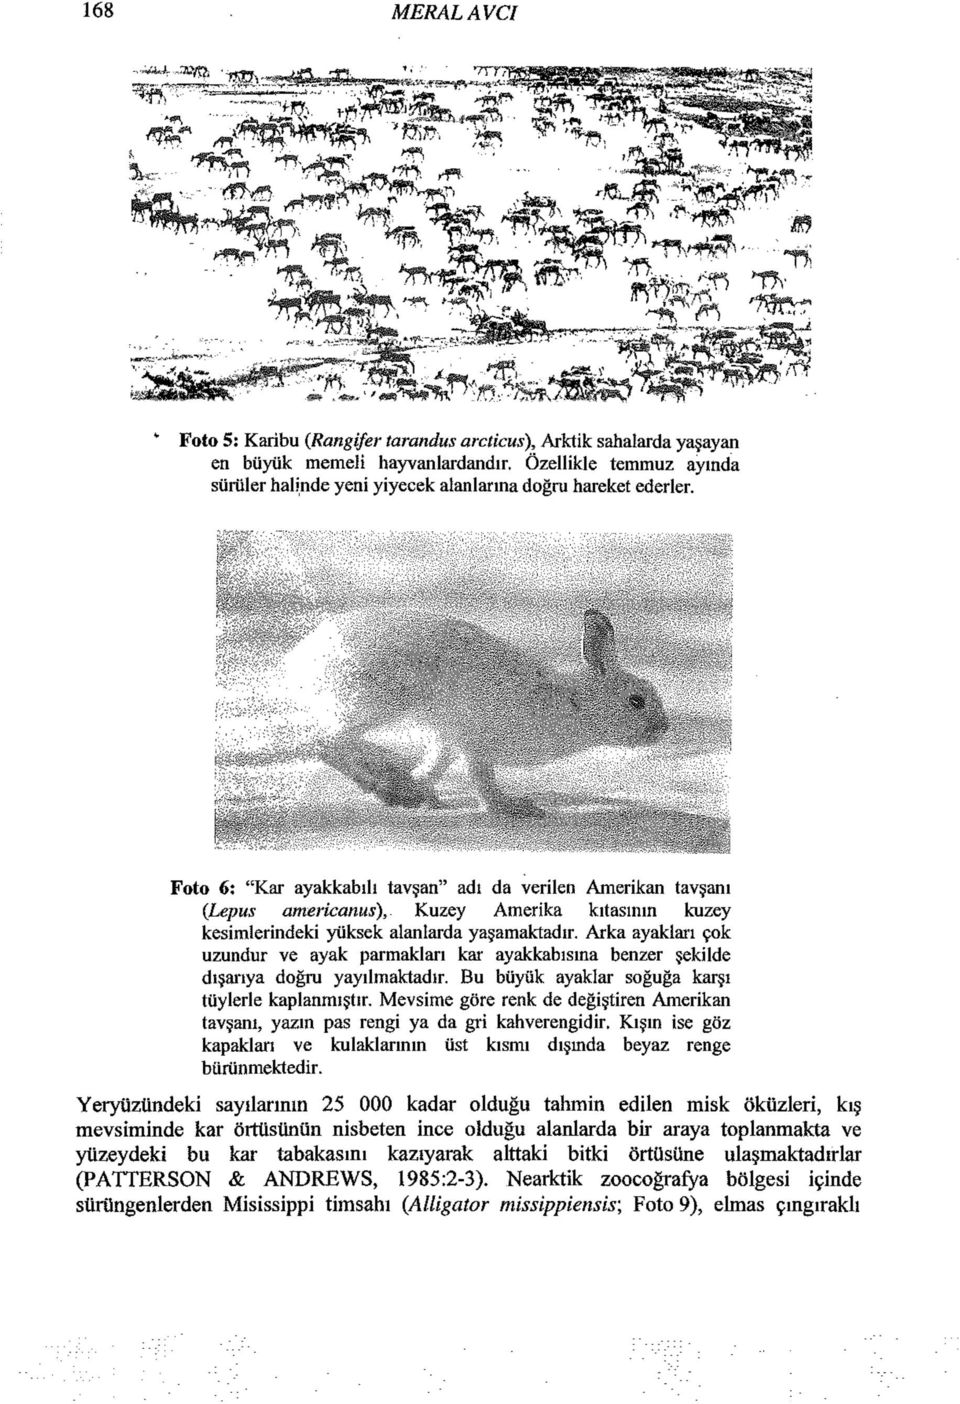 Foto 6: "Kar ayakkabılı tavşan" adi da verilen Amerikan tavşanı {Lepus americanus), Kuzey Amerika kıtasının kuzey kesimlerindeki yüksek alanlarda yaşamaktadır.